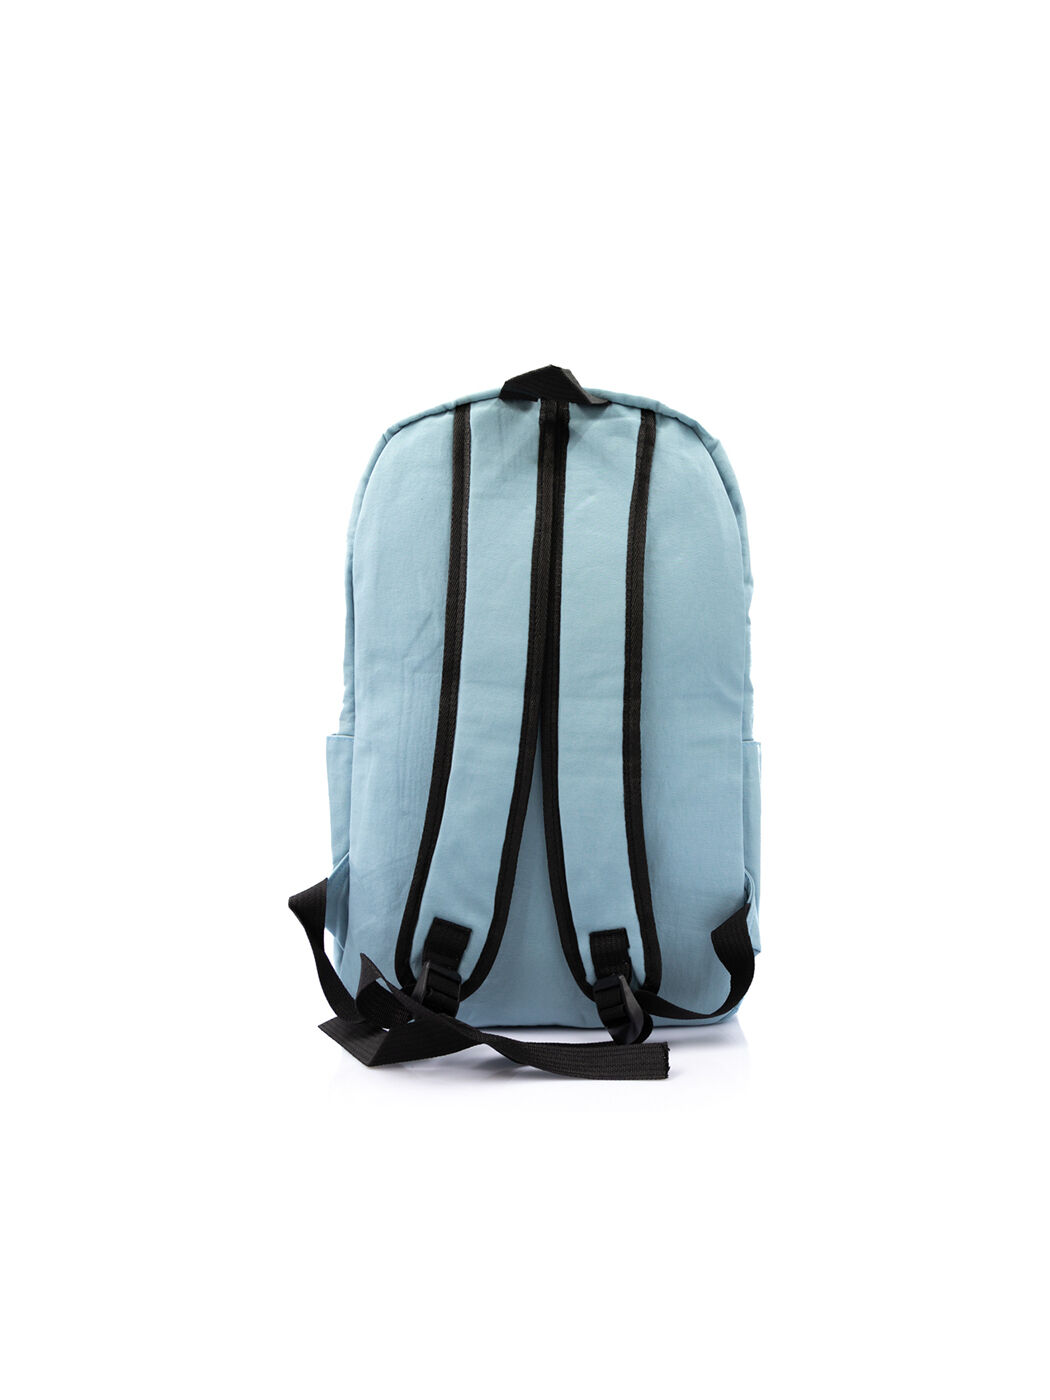 Рюкзак спортивный синий blue-M вид 2